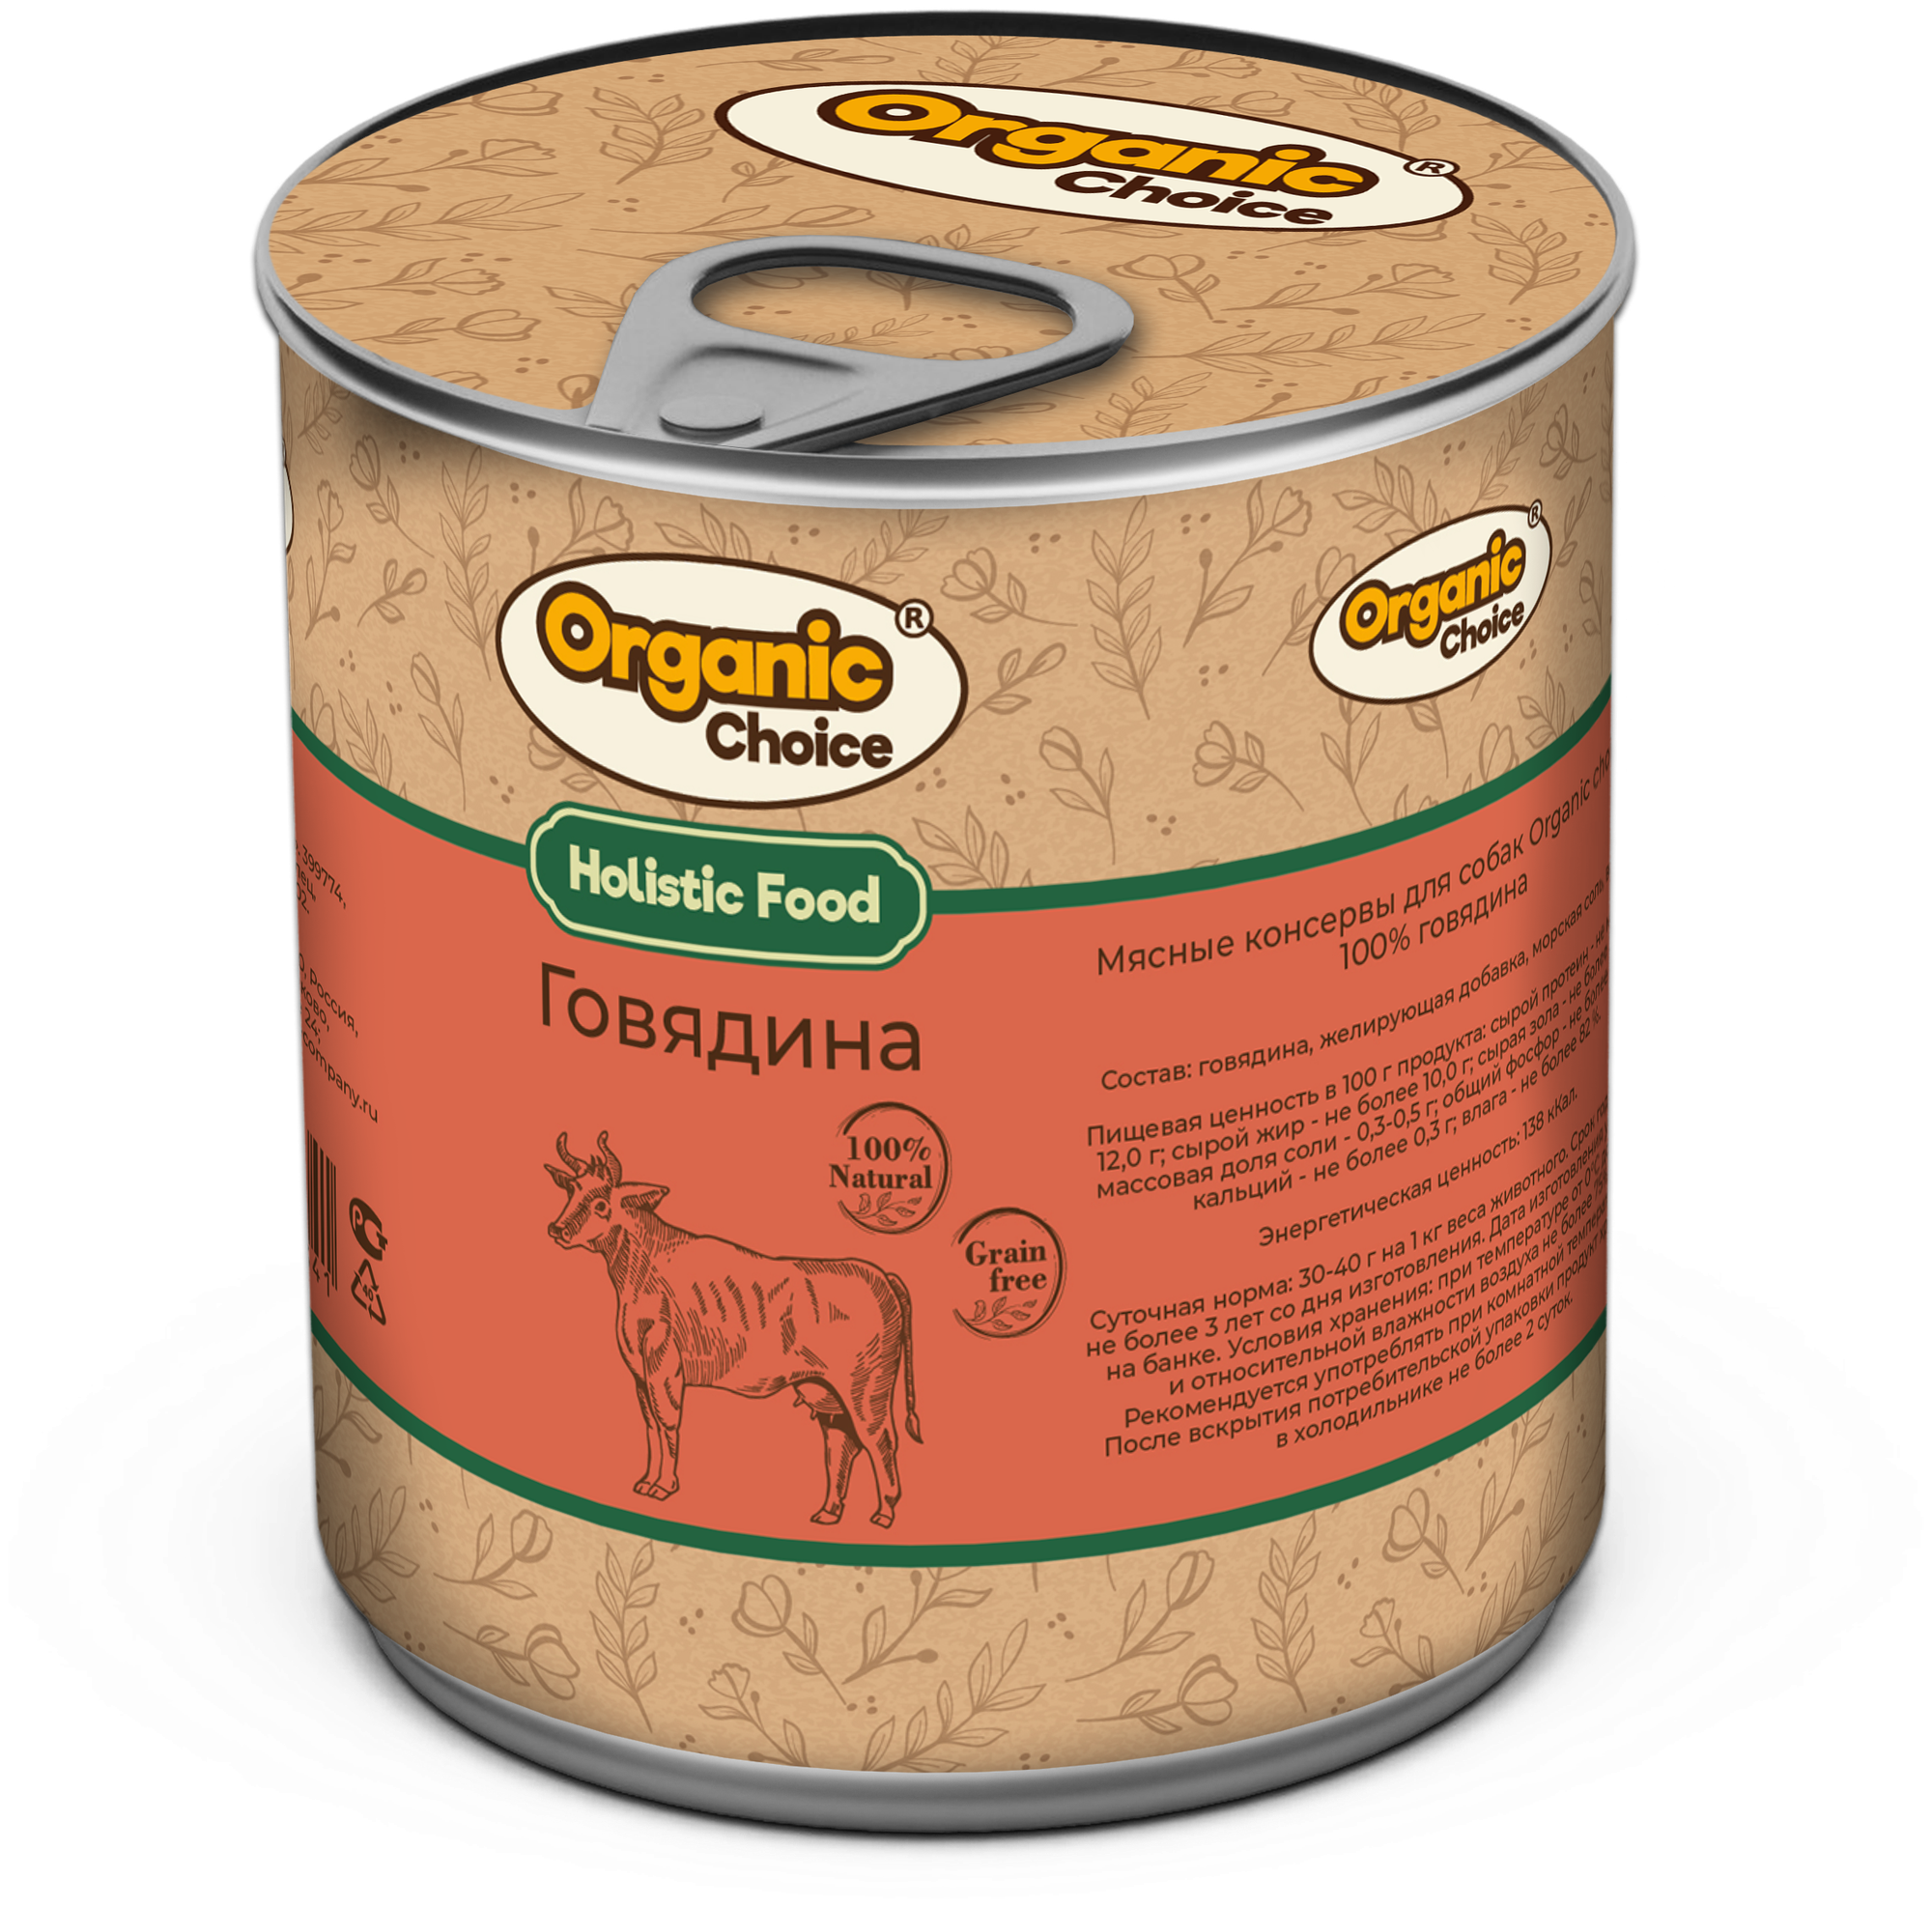 Organic Сhoice Консервы для собак 100 % говядина, 340 г